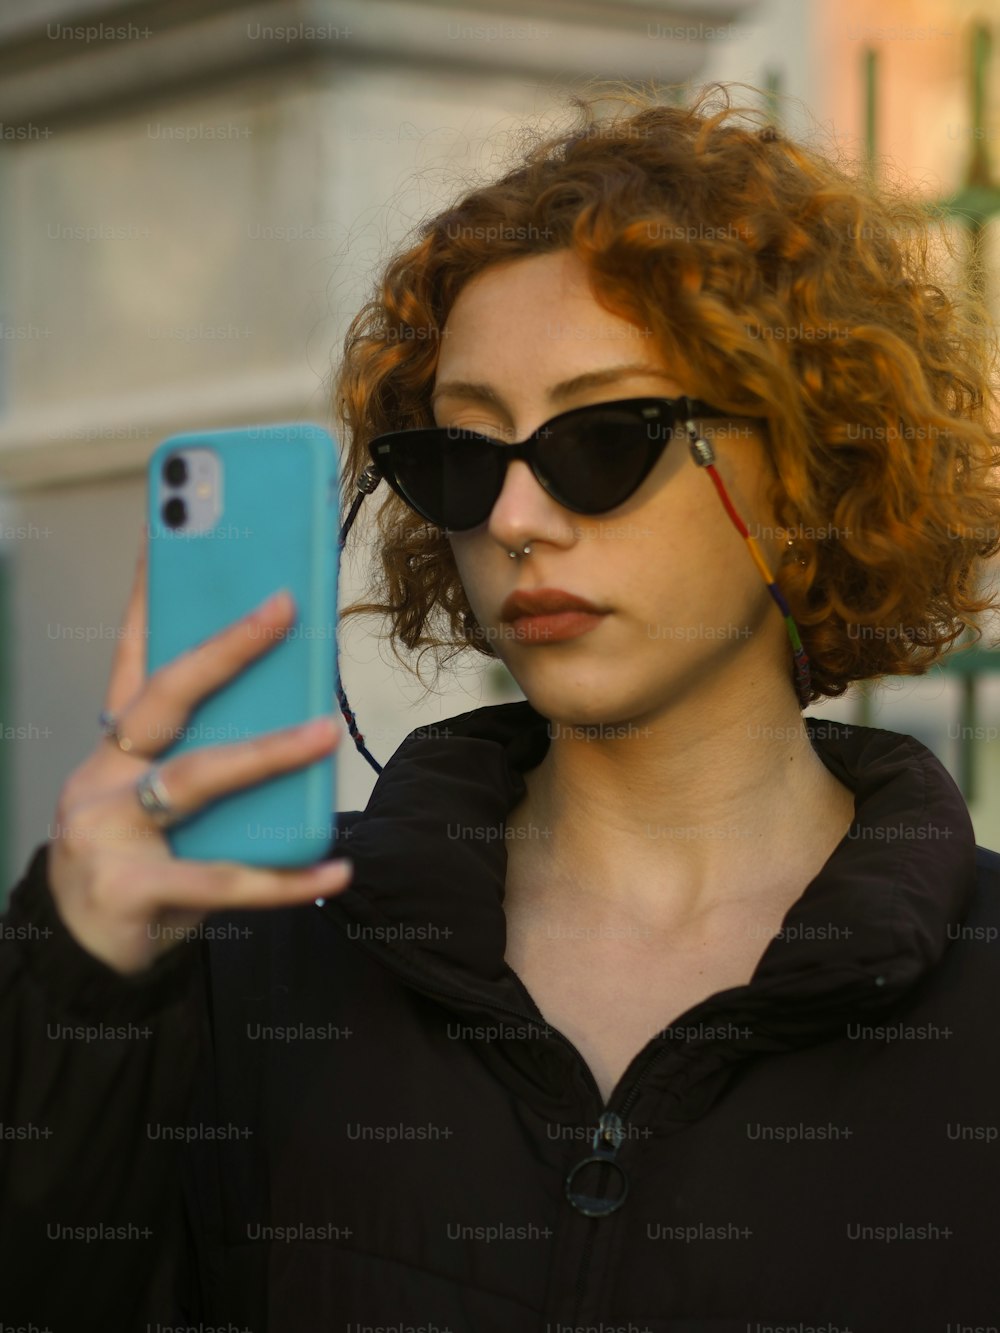 Una mujer con cabello rojo y gafas de sol sosteniendo un teléfono celular